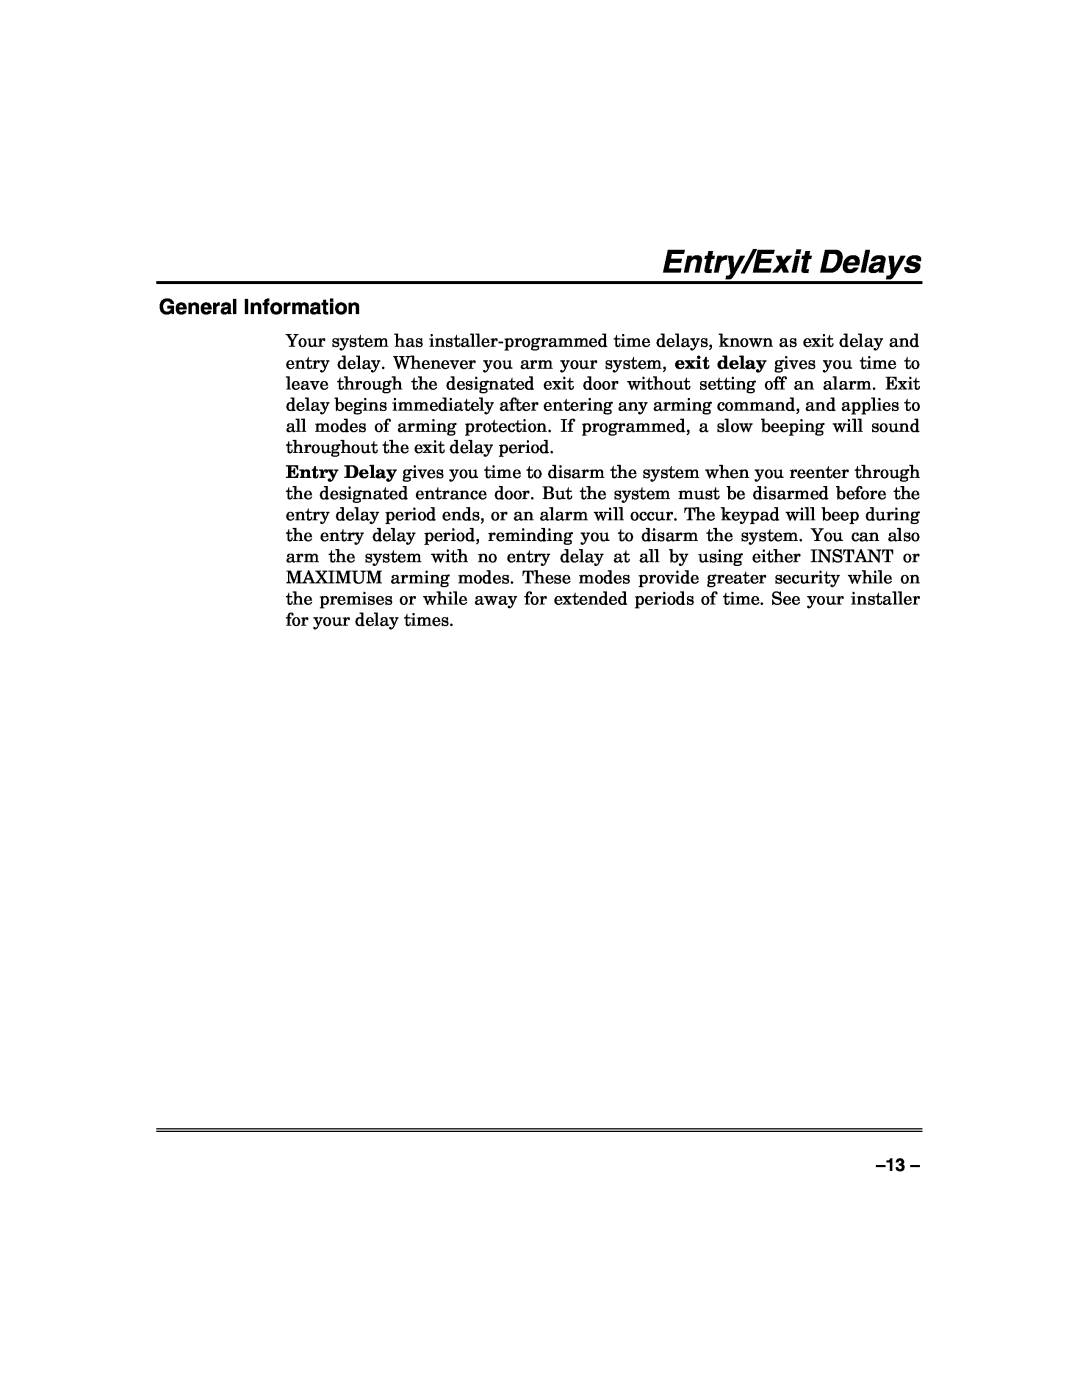 Honeywell VISTA-50PUL manual Entry/Exit Delays, General Information 